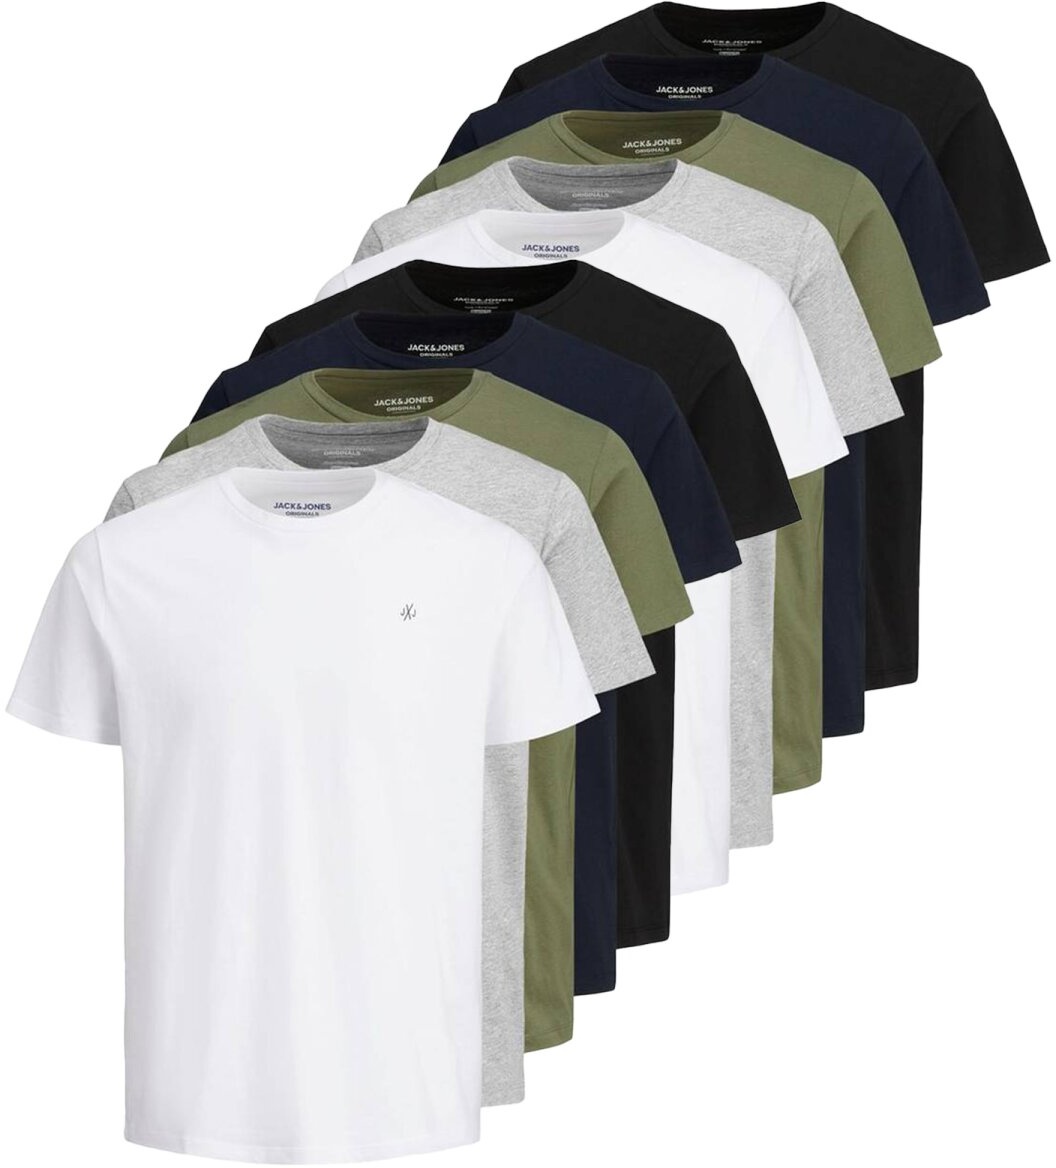 JACK&JONES Herren T-Shirt, 10er Pack - JORJXJ, T-Shirt, kurzarm, Rundhals, Baumwolle, Logo, einfarbig Weiß/Grau/Grün/Blau/Schwarz L